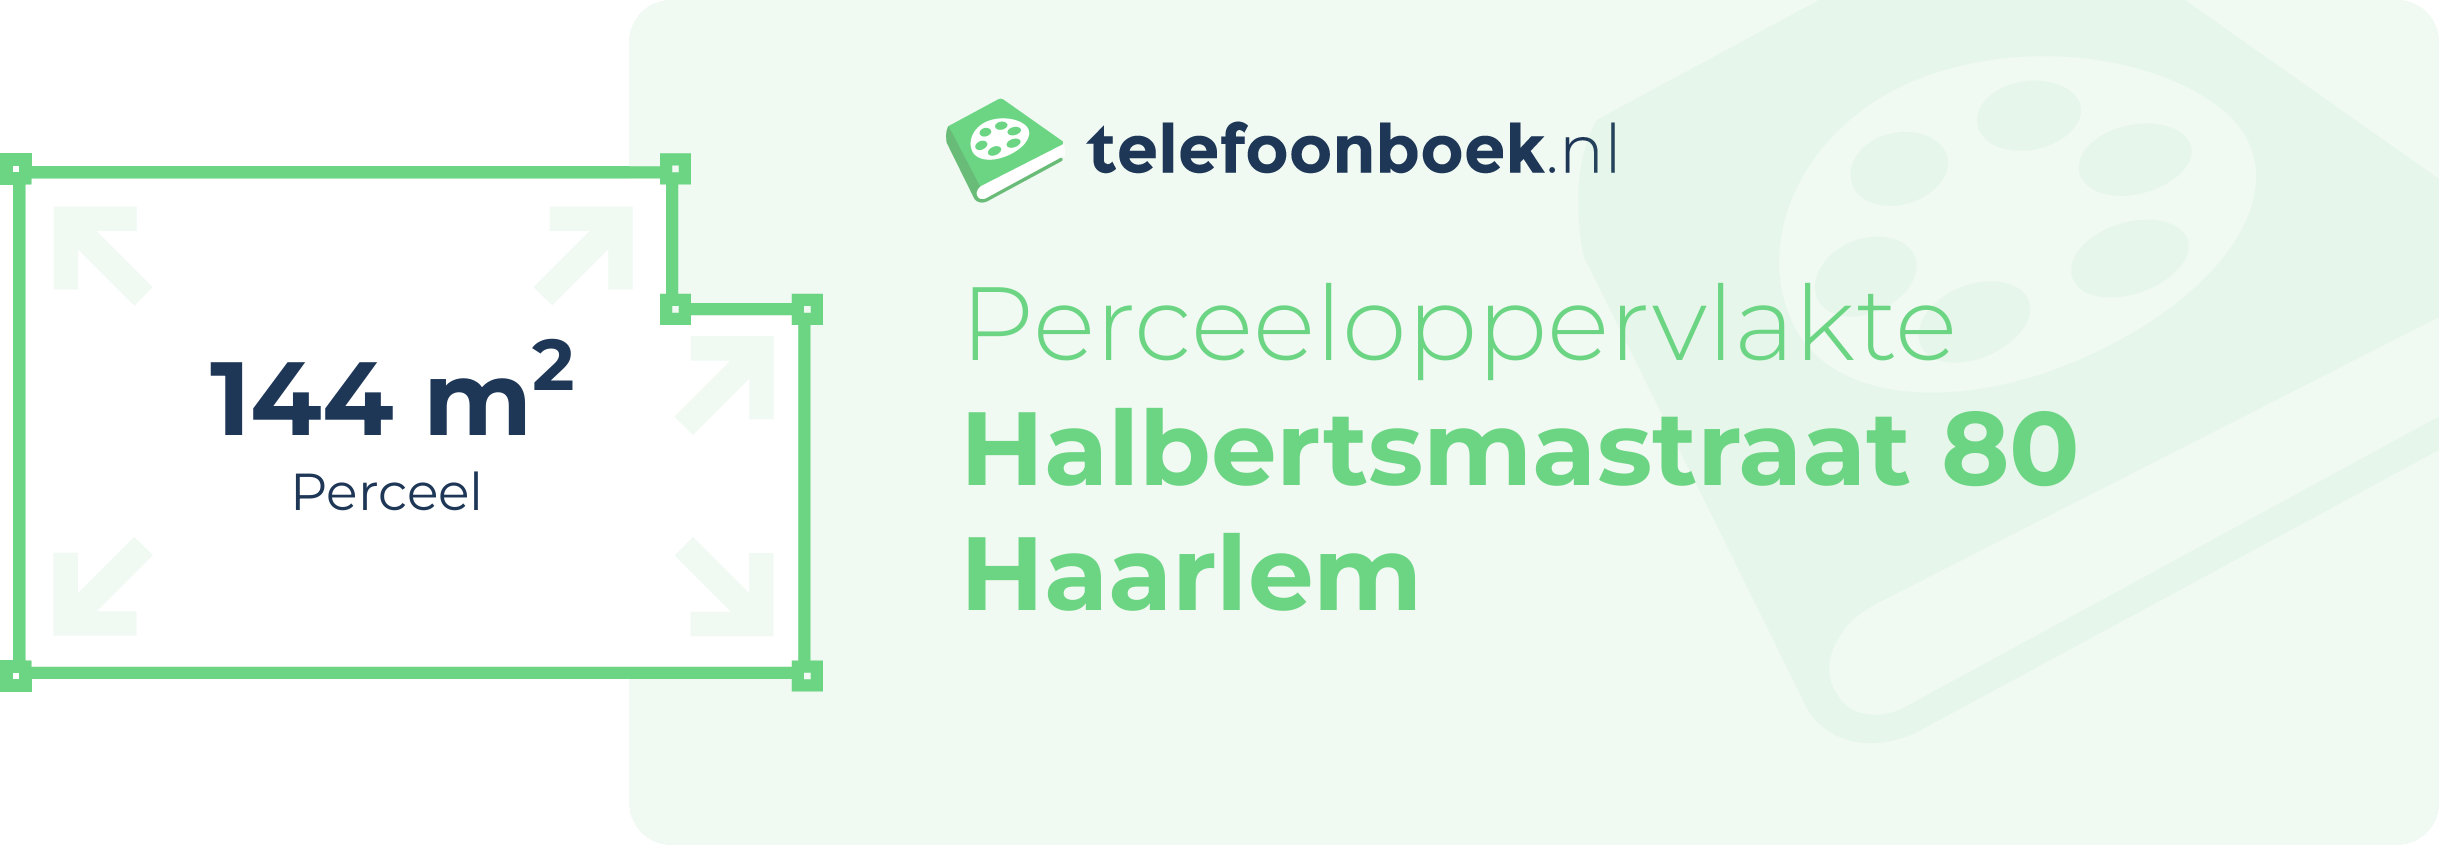 Perceeloppervlakte Halbertsmastraat 80 Haarlem